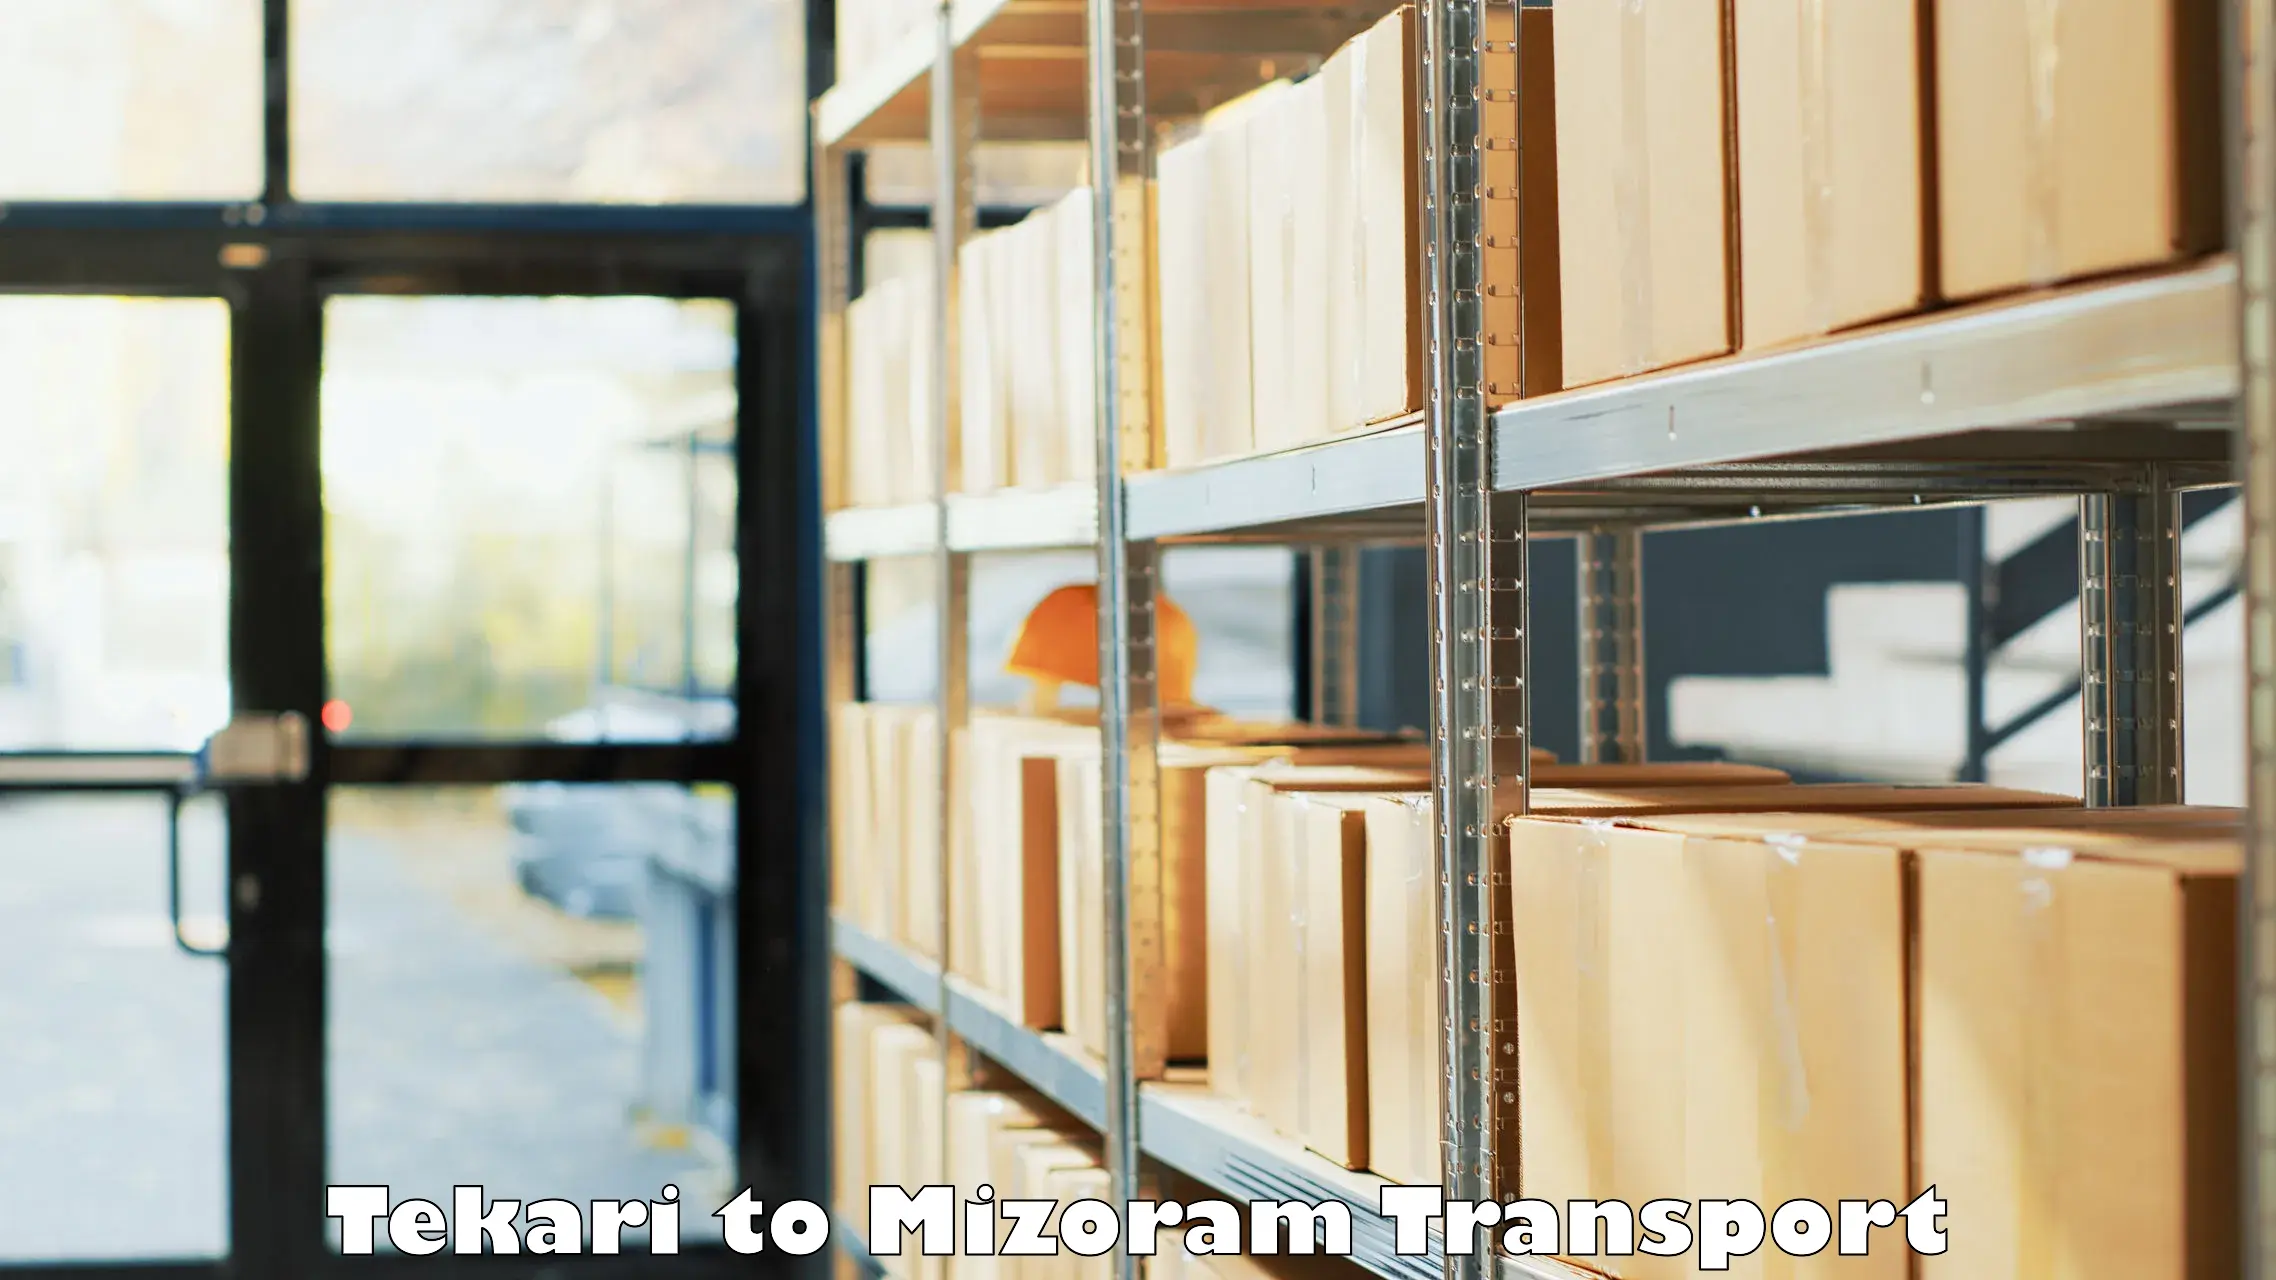 Two wheeler transport services Tekari to Mizoram